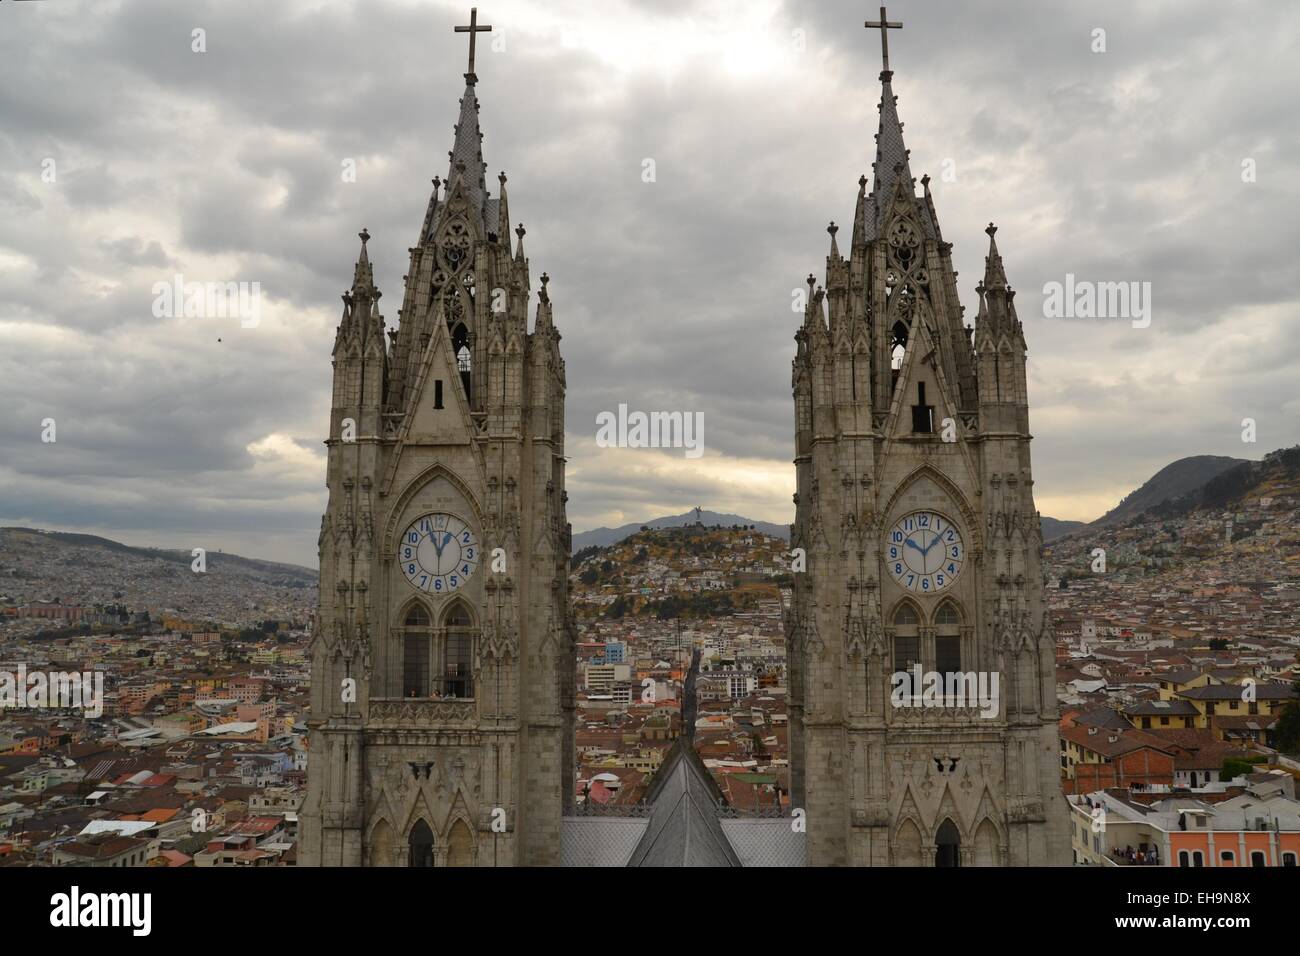 Towers of Basilica in Quito, Ecuador Stock Photo